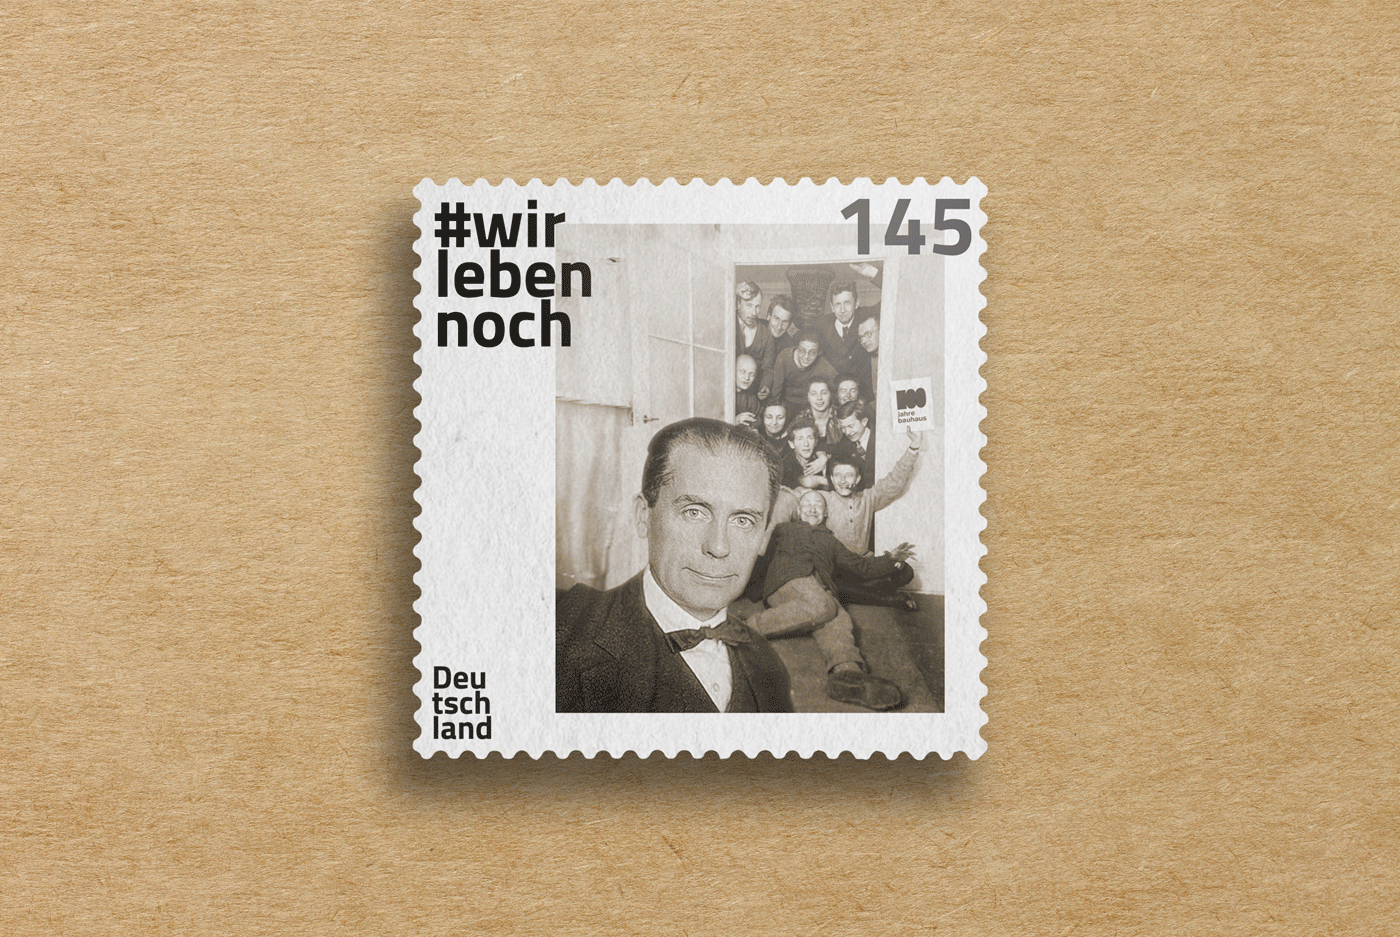 bauhaus 100 YEARS BAUHAUS 100 jahre bauhaus walter gropius weimar germany art school briefmarke postage stamp stamp